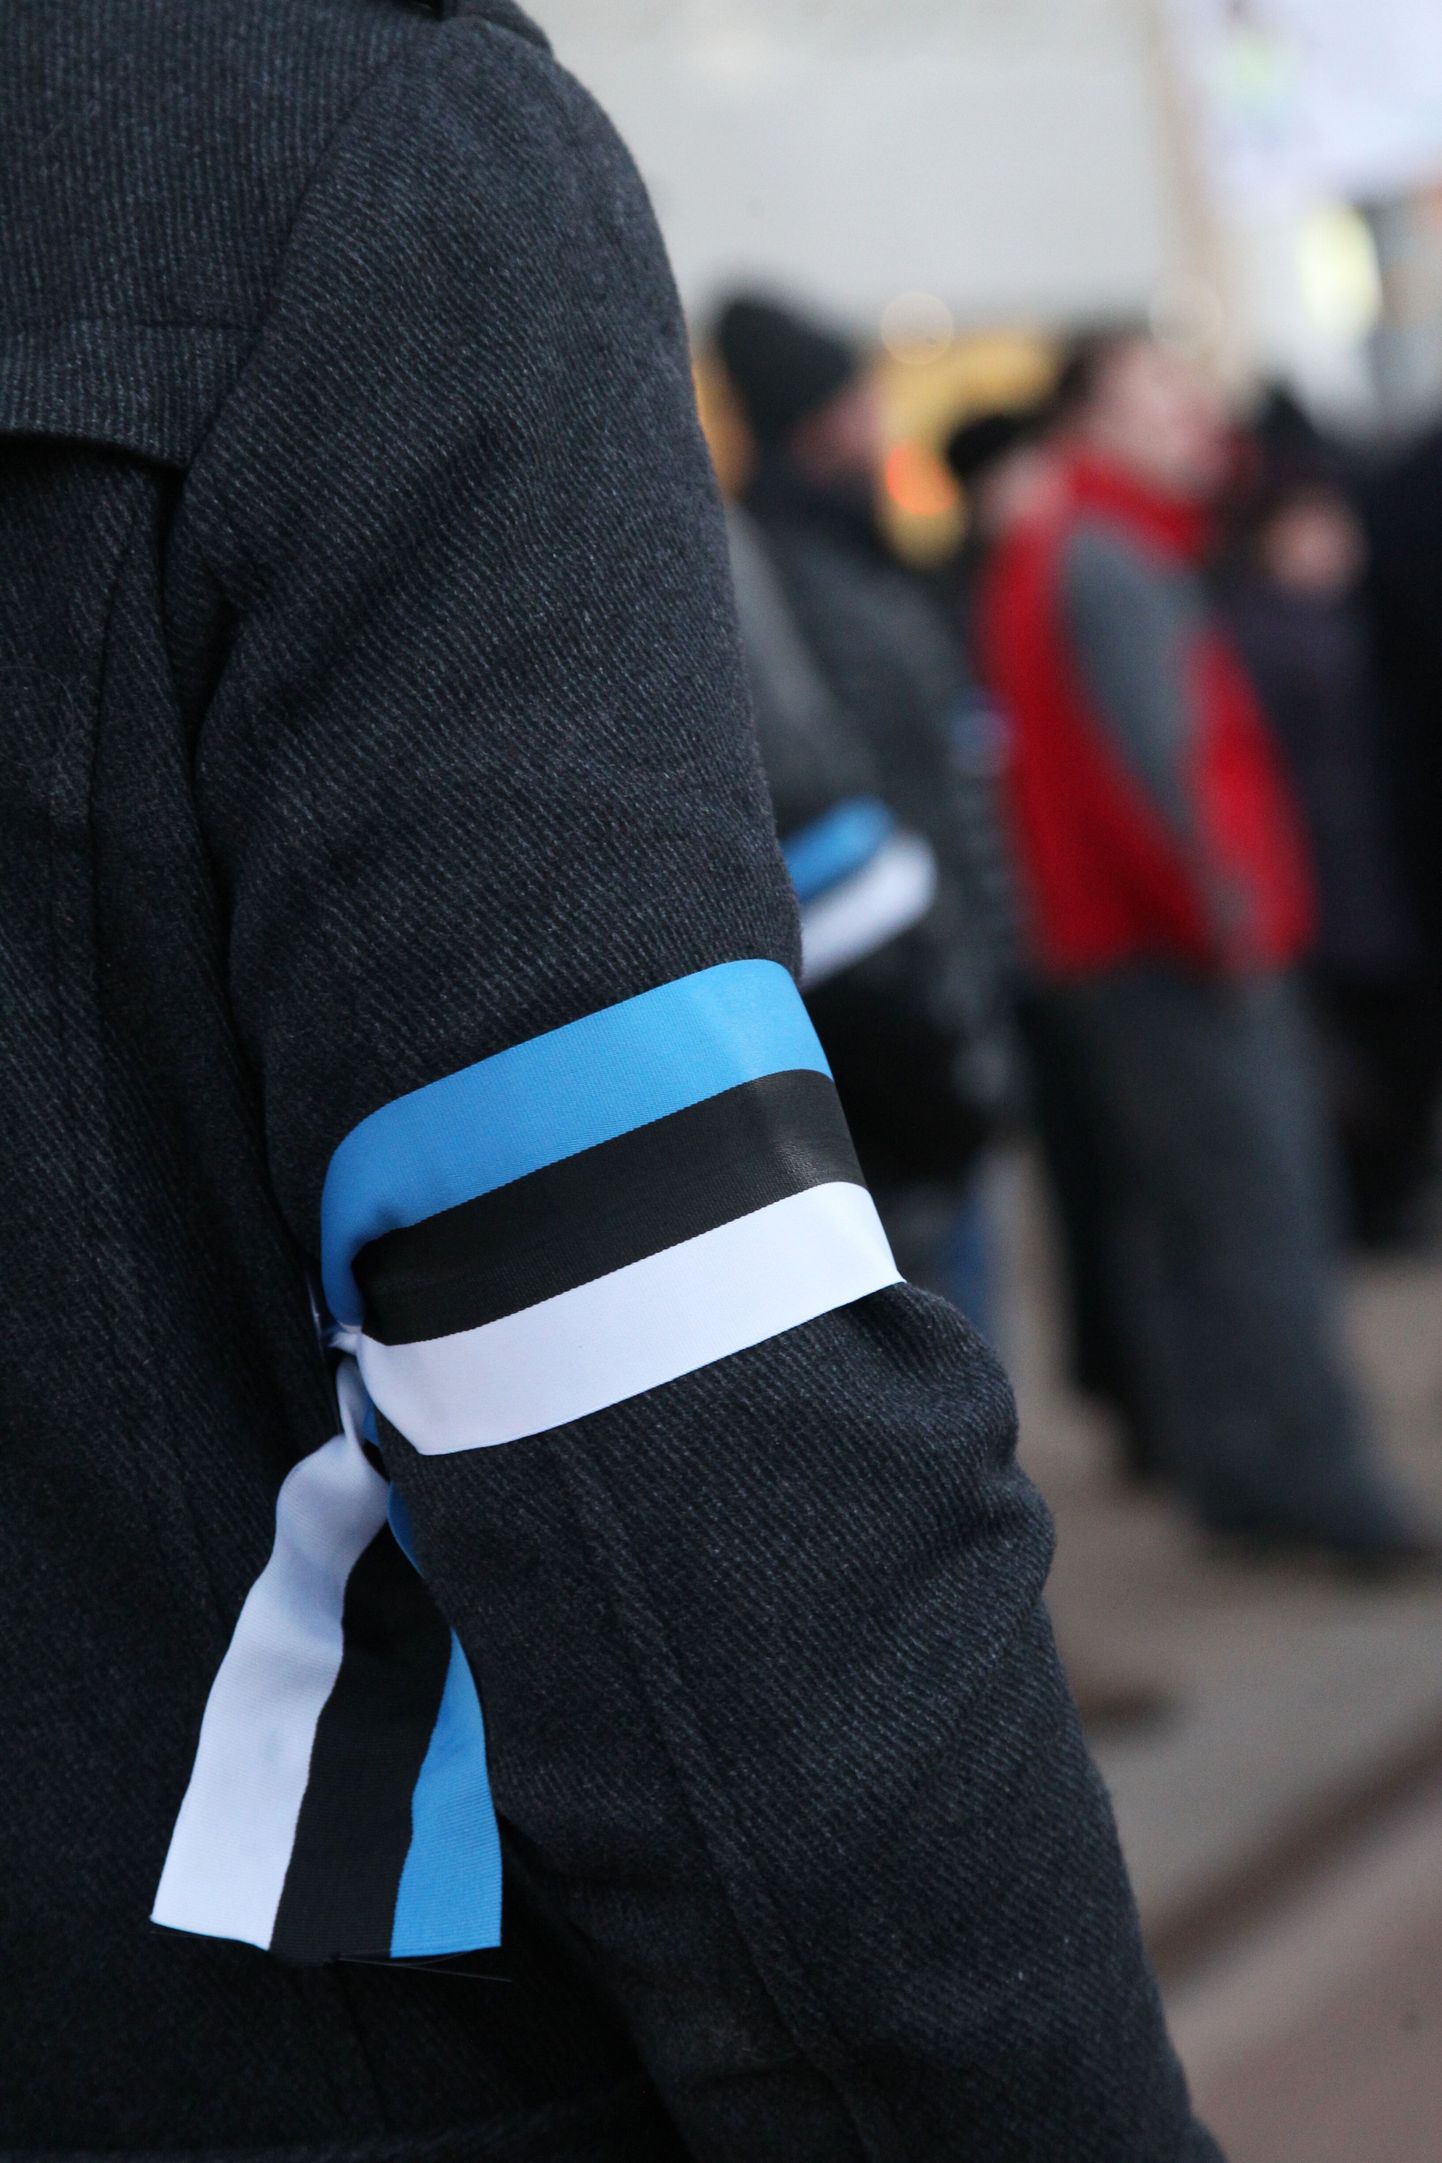 Pärnu linnapea Romek Kosenkranius kutsub pärnakaid üles heiskama kodule 23. ja 24. veebruaril Eesti Vabariigi lipu ning kandma neil päevil rinnas või paigaldama autole sinimustvalge lindi.